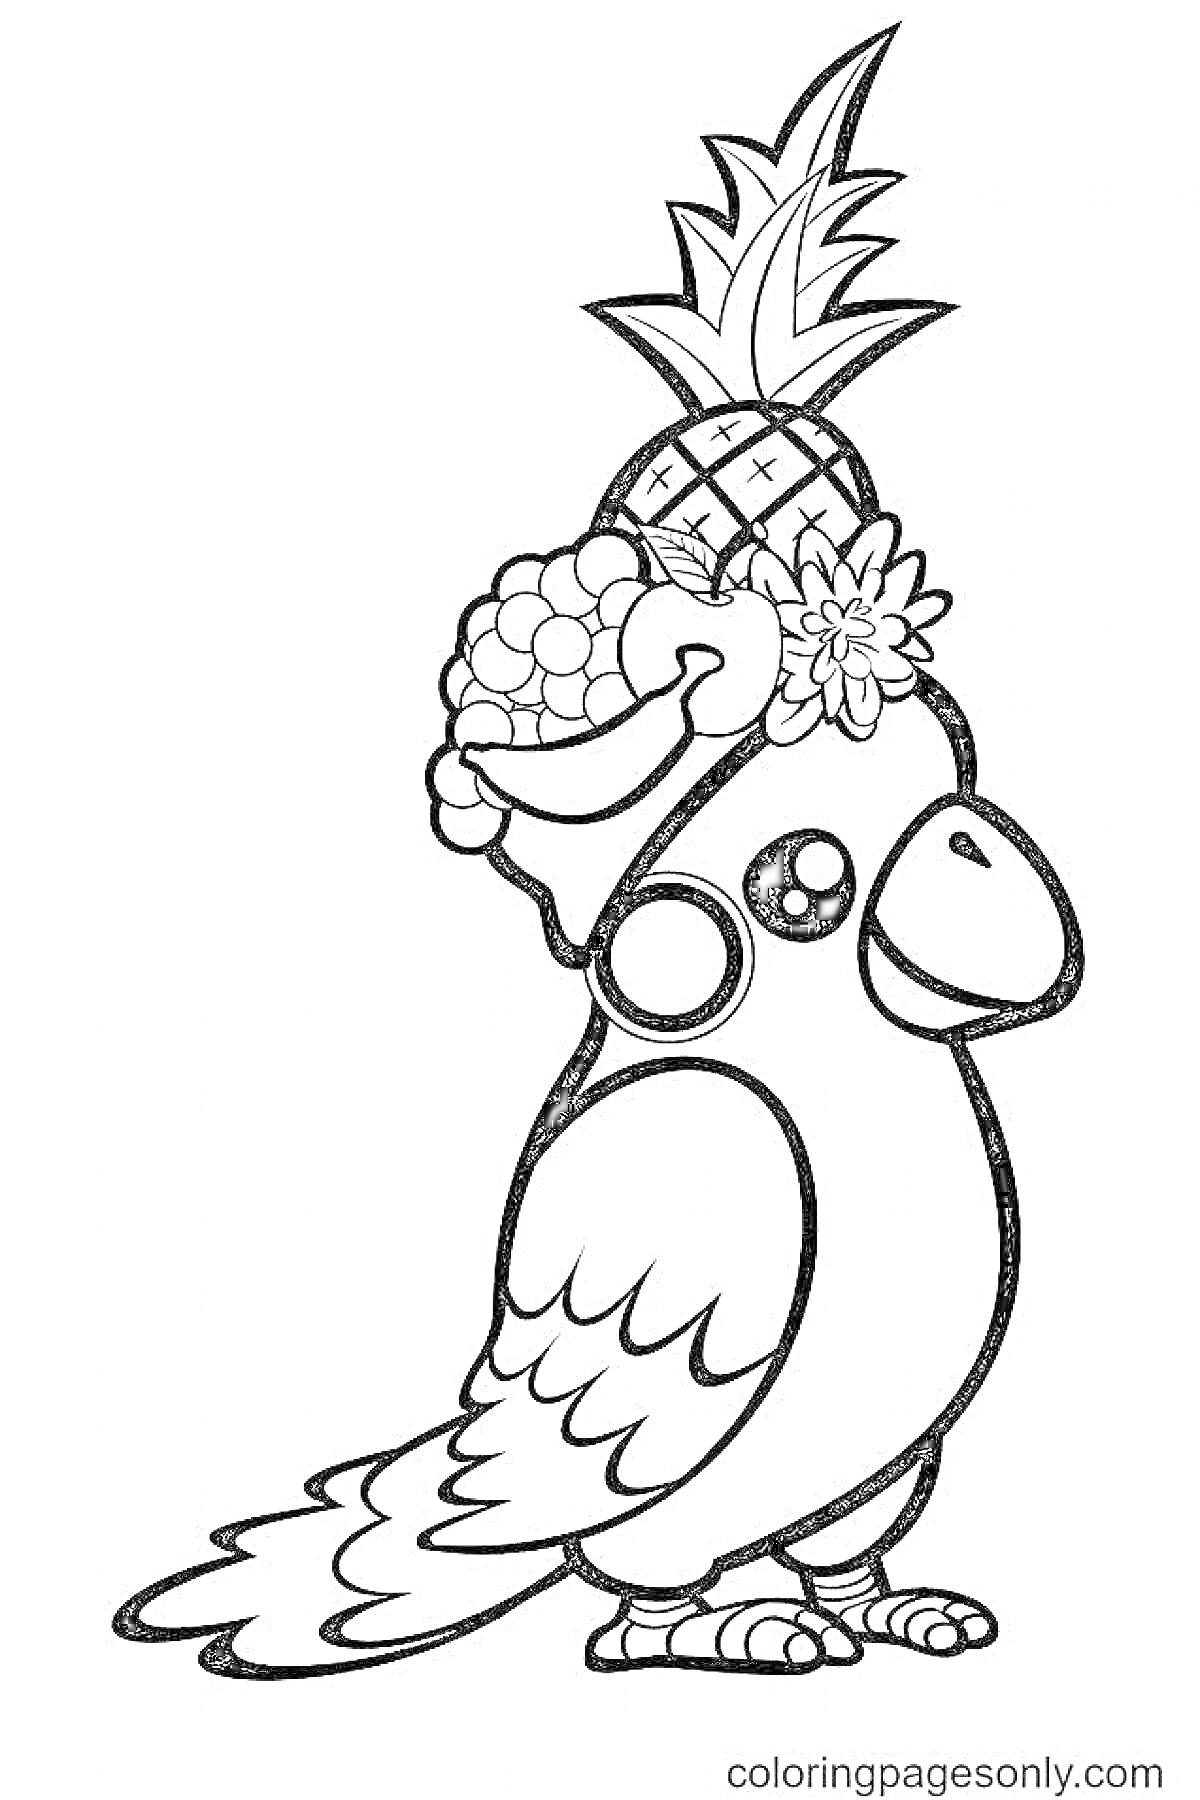 Раскраска попугай с фруктовой шляпой (ананас, виноград, цветы)